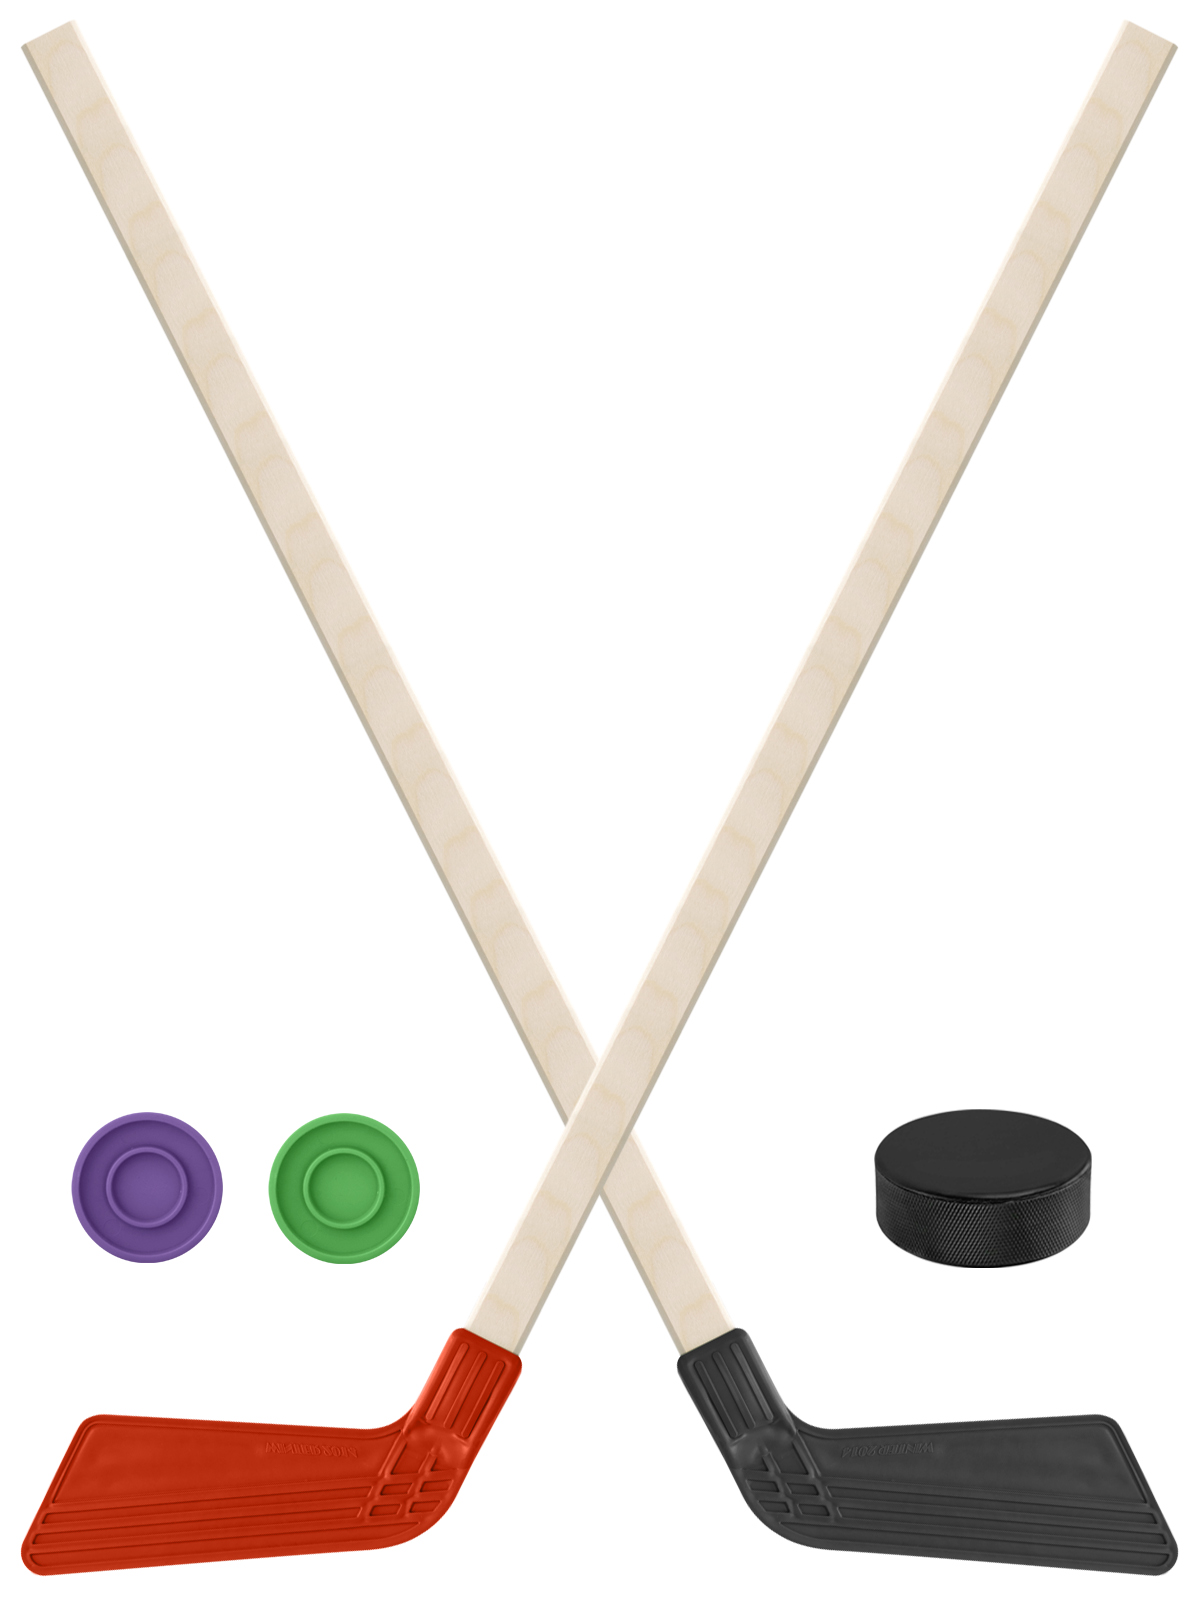 Детский хоккейный набор Задира-плюс  Клюшка хоккейная 2шт(красн,чёрн)+2 шайбы+Шайба 75 мм детский хоккейный набор задира плюс 3 в 1 клюшка хоккейная 80 см син чёрн жел 3 шайбы